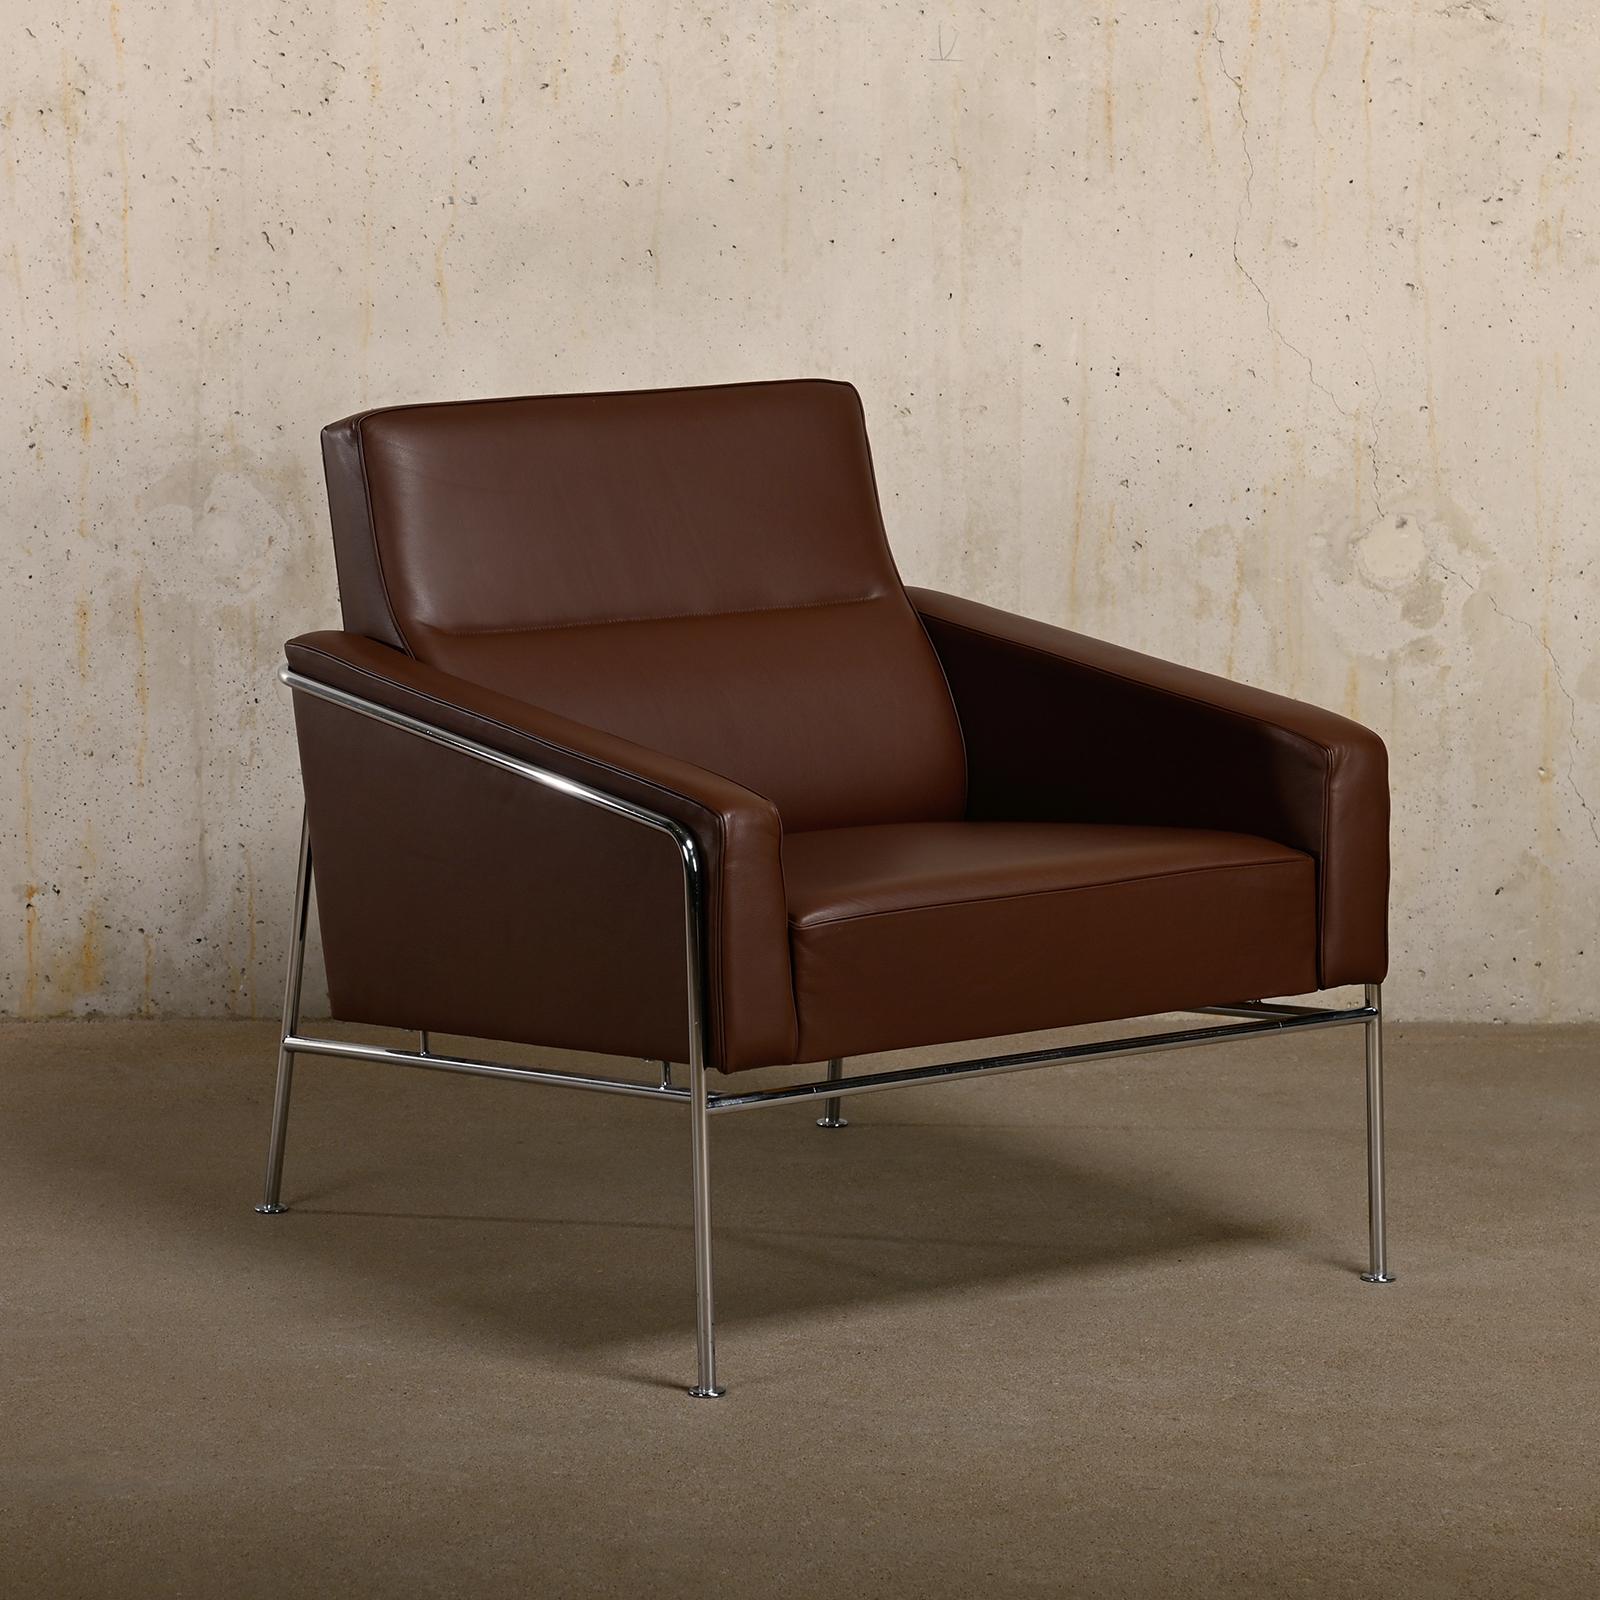 Cette chaise longue a été conçue par Arne Jacobsen pour l'aérogare SAS reliée au SAS Royal Hotel de Copenhague, au Danemark. Ces fauteuils sont fabriqués par Fritz Hansen en 2008 et sont recouverts de cuir Grace de couleur Chestnut. Les chaises sont